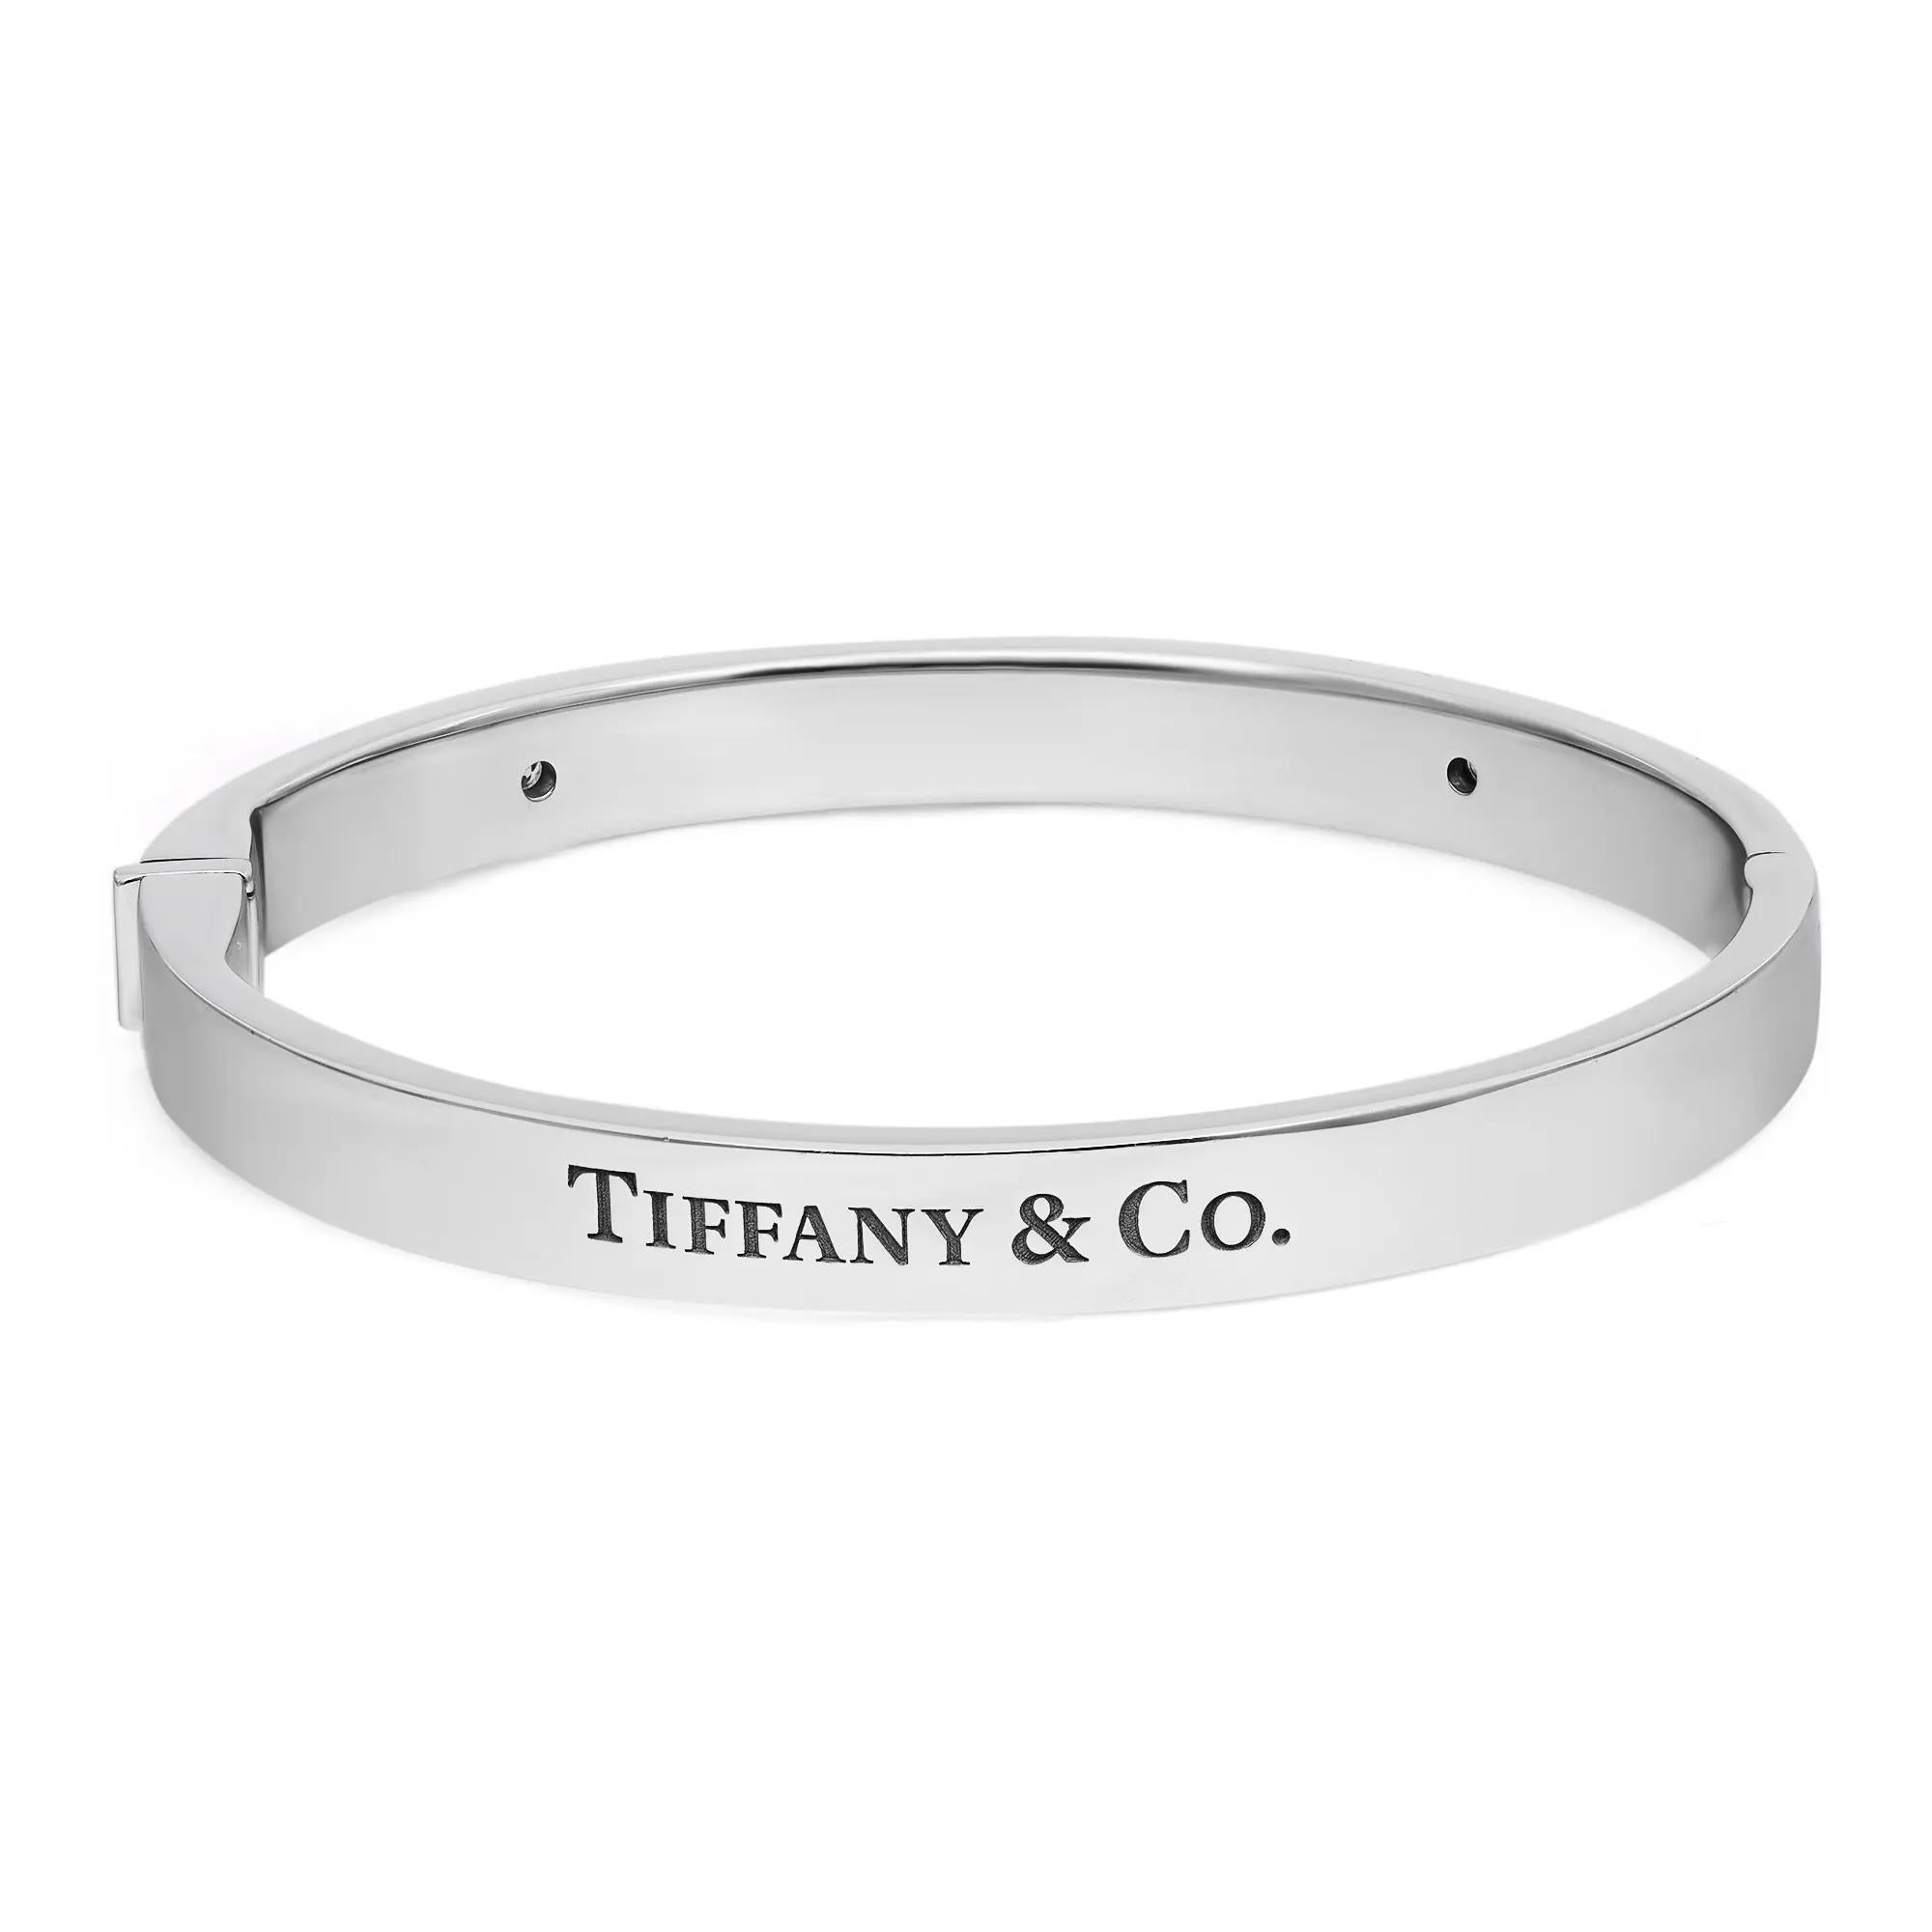 Kühn und wunderschön, diese Tiffany & Co. Das Two Diamond Logo Hinged Bangle Bracelet ist eine wahre Essenz der Schmuckästhetik. Gefertigt aus glänzendem 18-karätigem Weißgold. Dieses Armband besteht aus einem ovalen Armreif mit Scharnier, der mit 2